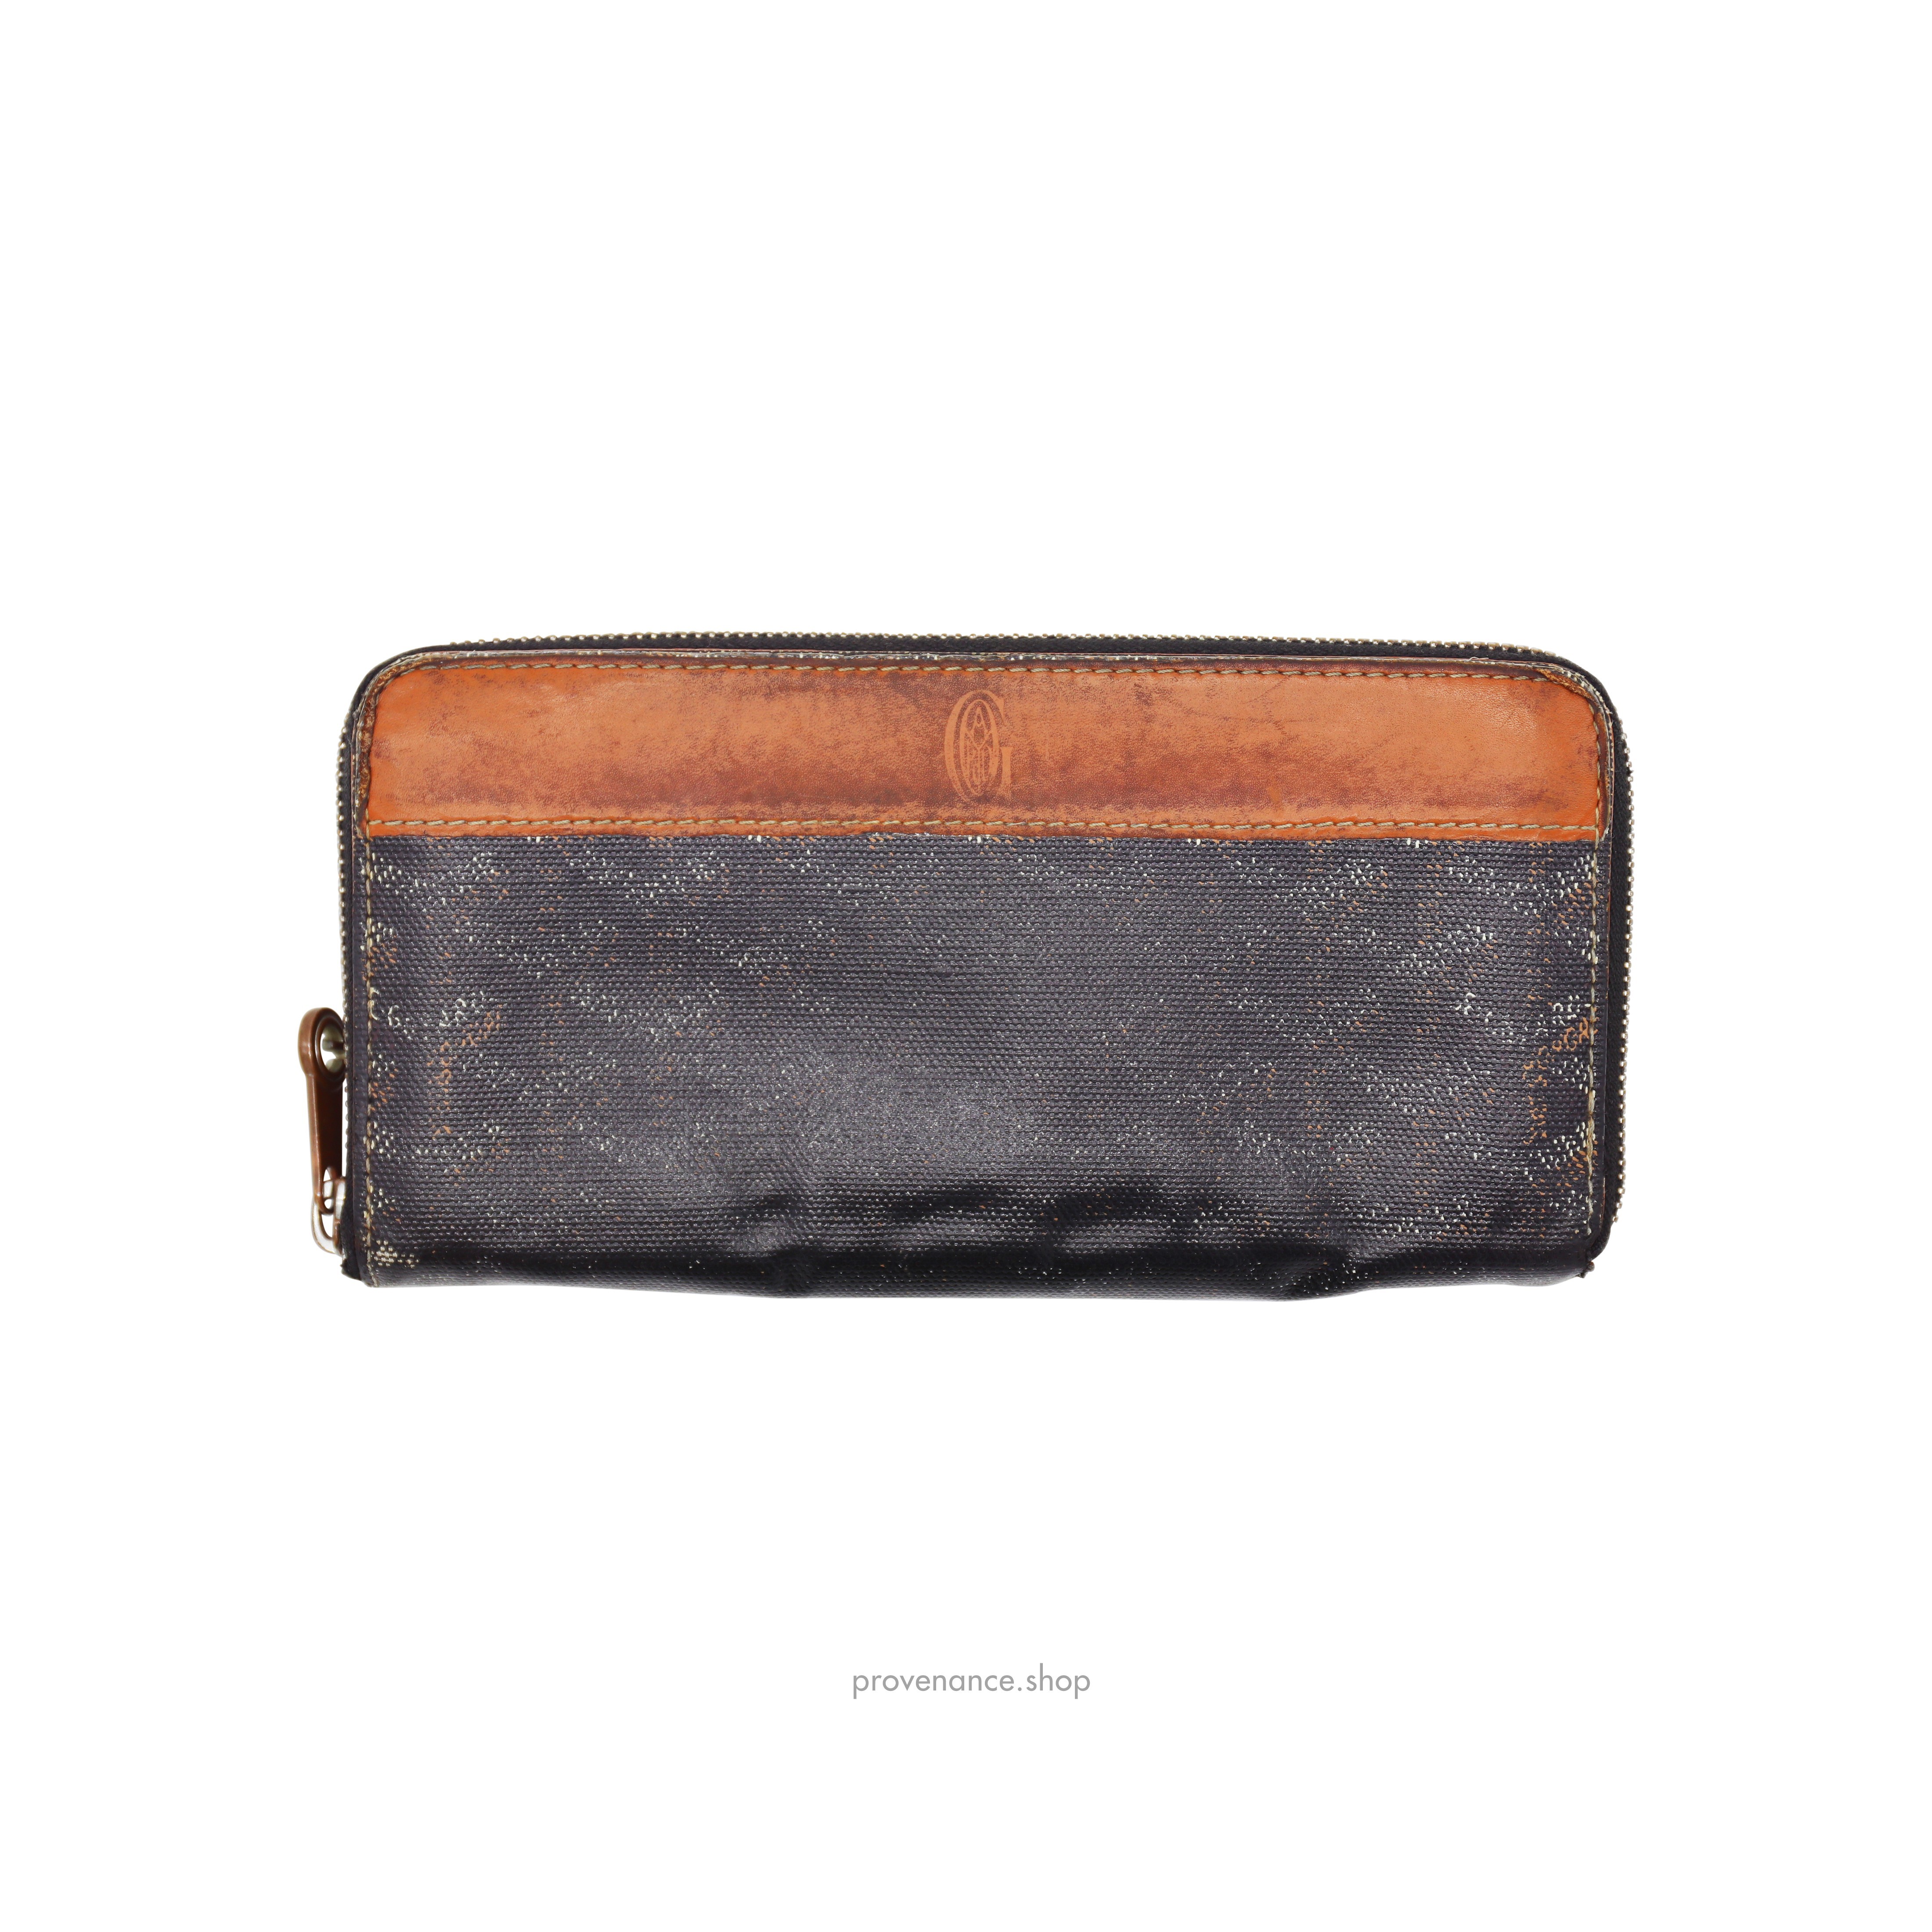 Goyard Matignon Long Wallet - Black/Tan - 1